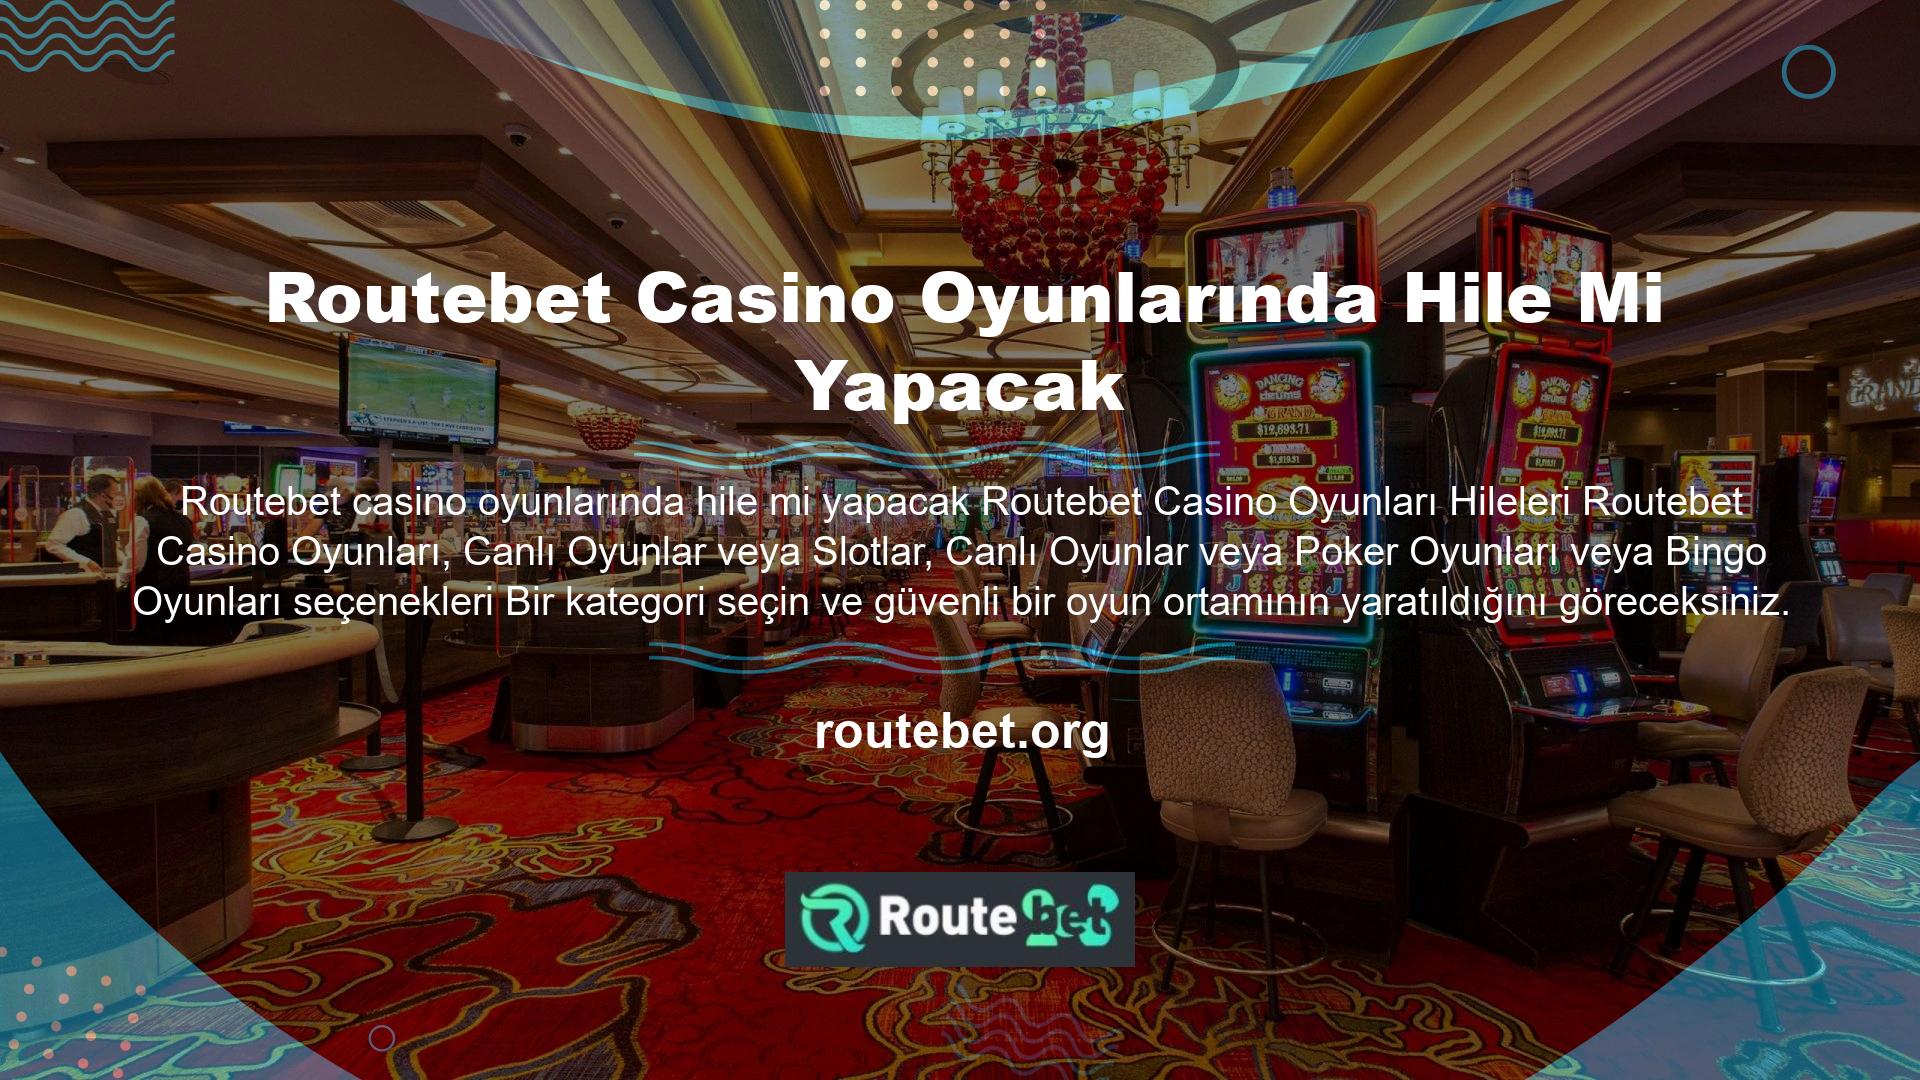 Routebet casino oyunlarında hile yapar mı Bir site veya işletme açısından bu tür programlara mali, şeref, prestij veya kredi açısından gerek olmadığını görebilirsiniz